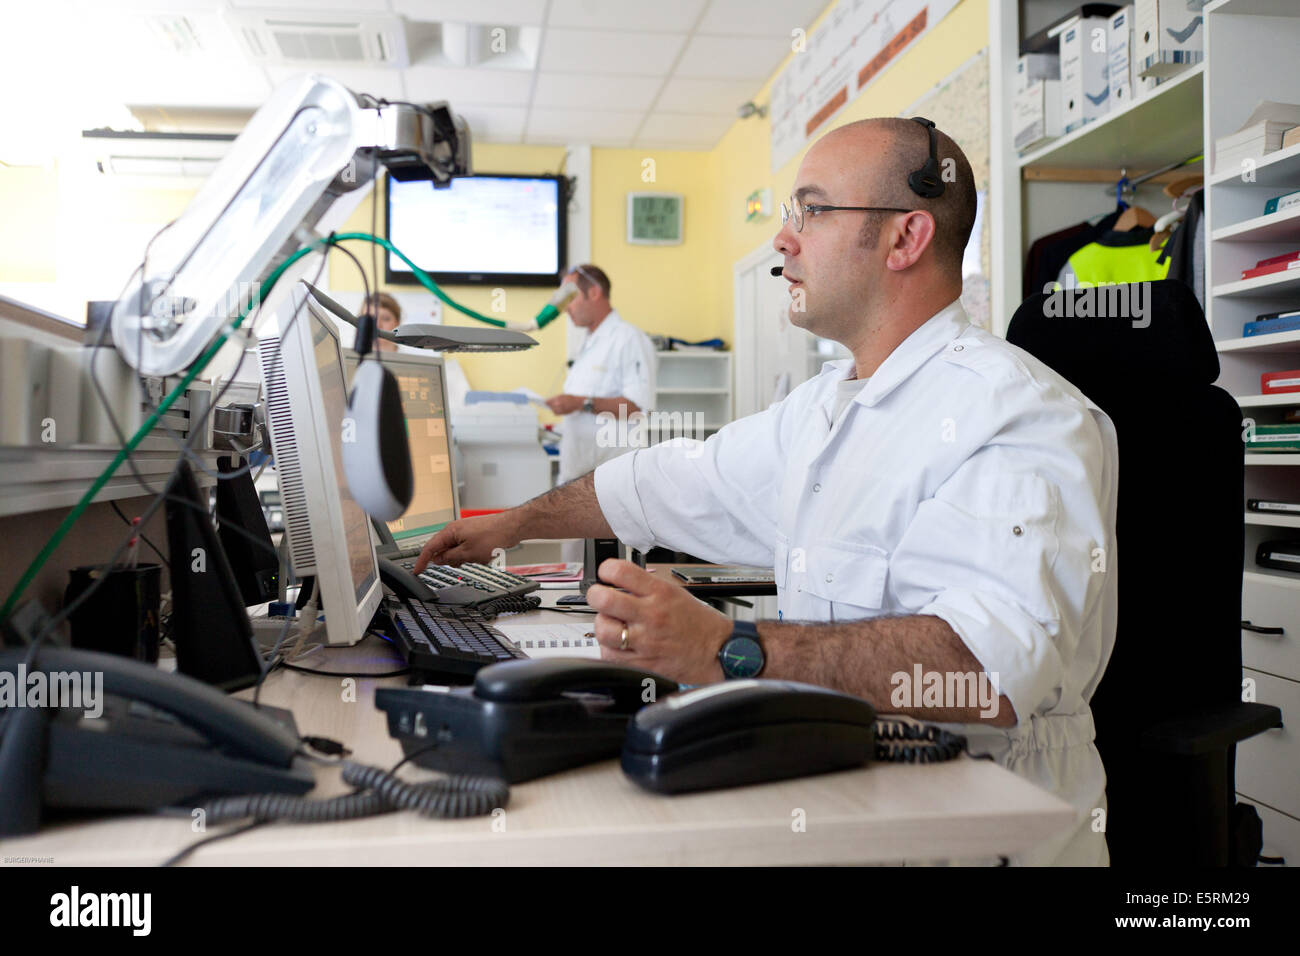 Notrufzentrale. Verordnung Arzt: medizinisches Personal erste Hilfe leisten, Krankenhaus in Limoges, Frankreich. Stockfoto